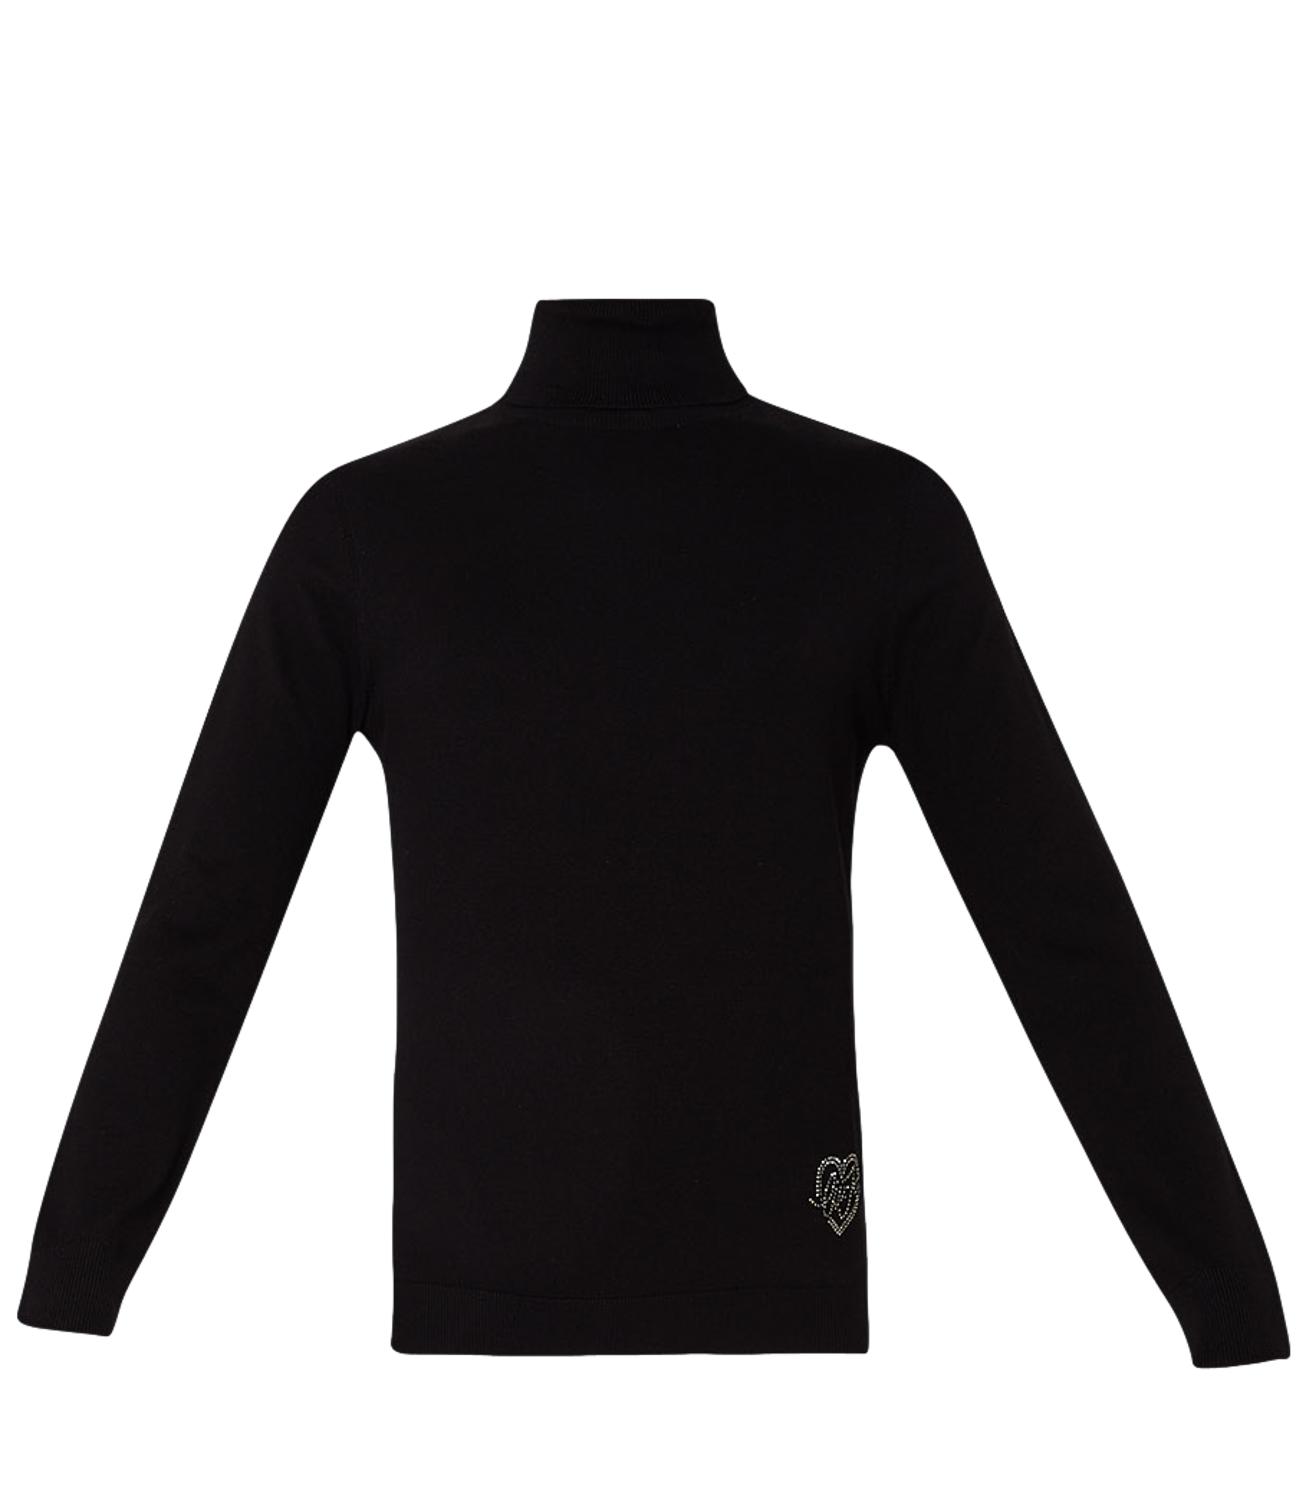 LIU JO women's black turtleneck sweater